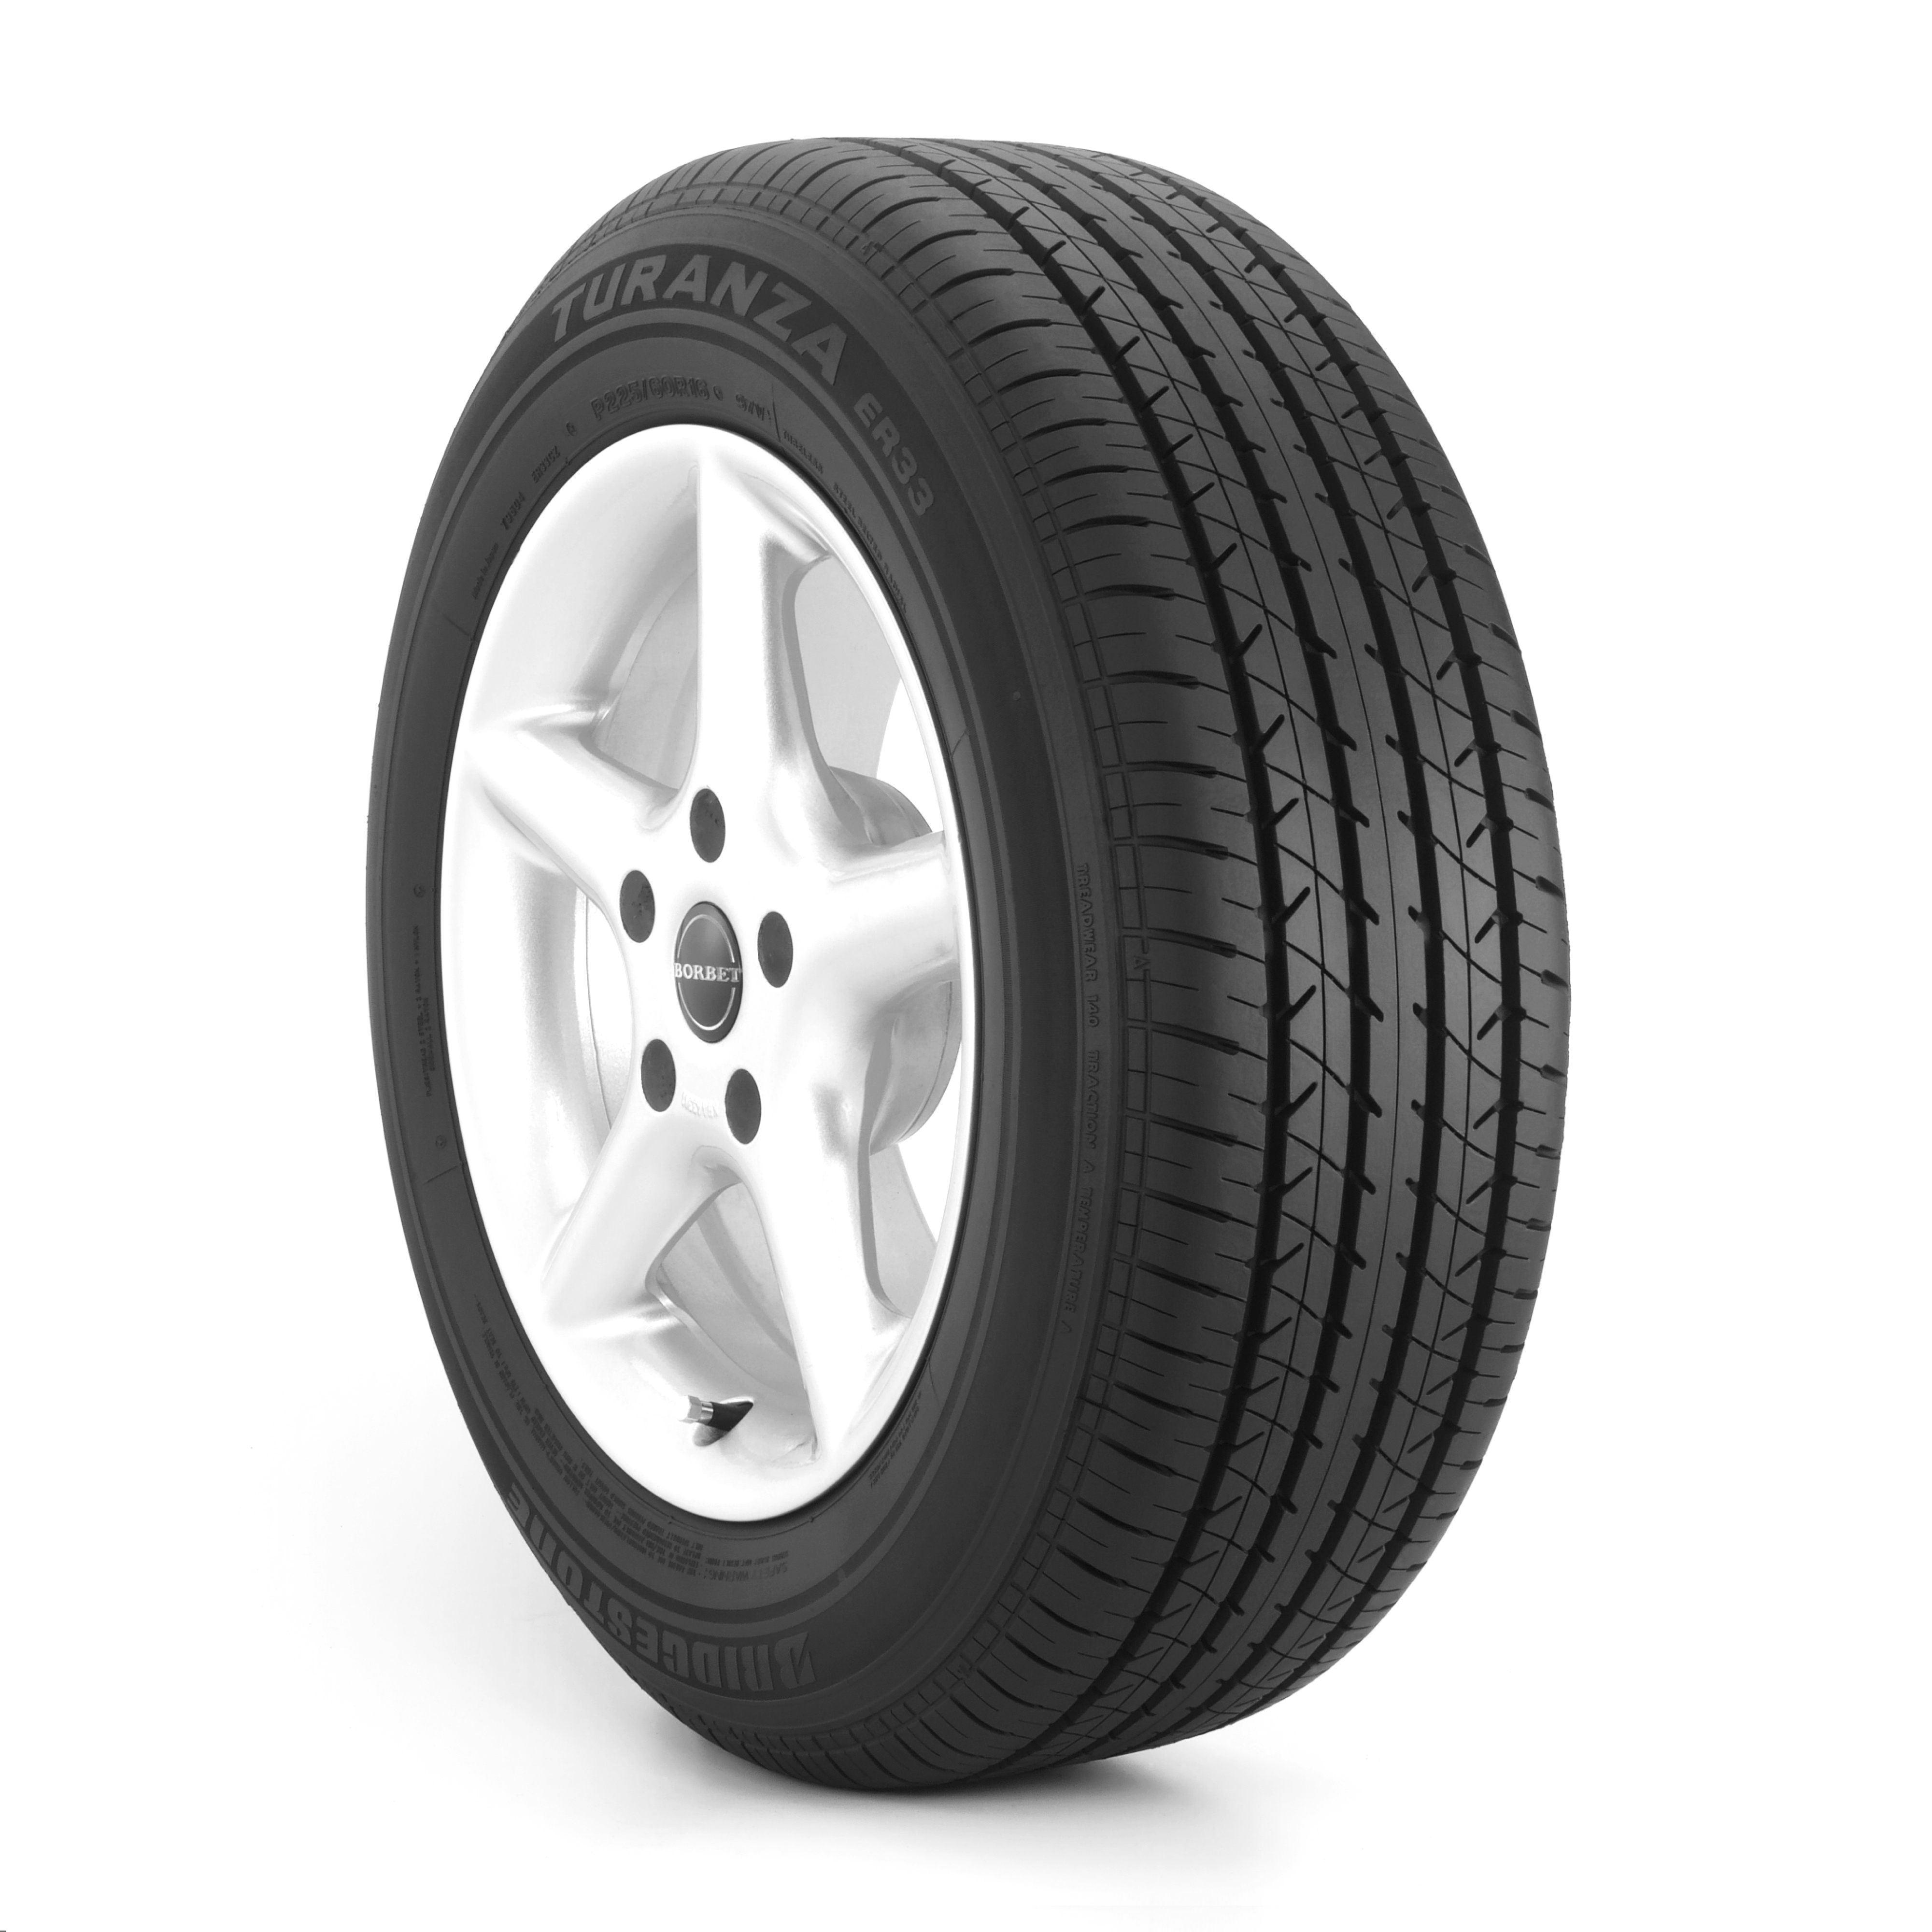 Turanza ER33 Run-Flat Technology Tyre